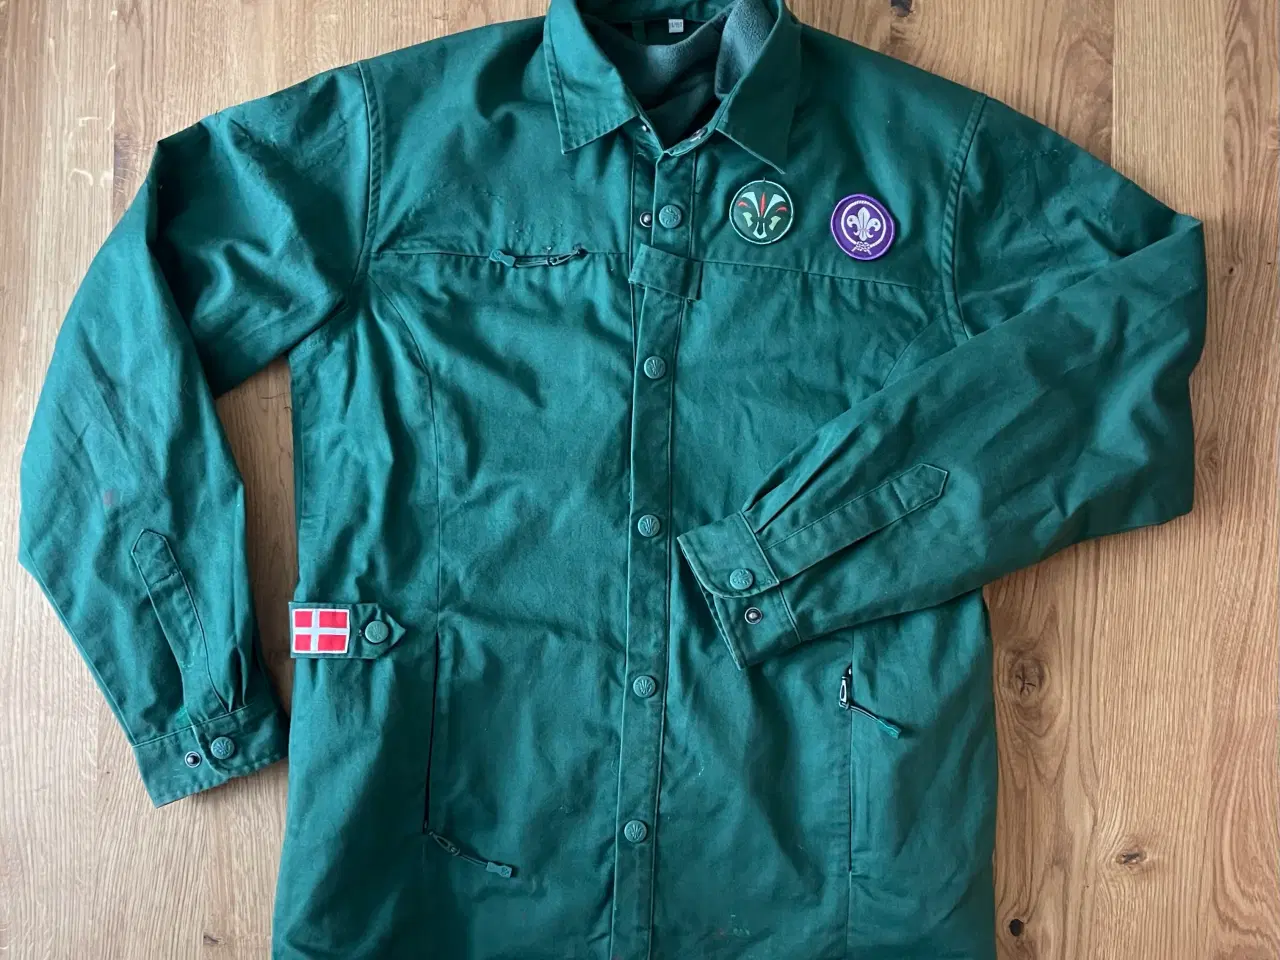 Billede 1 - KFUM grøn spejder uniform